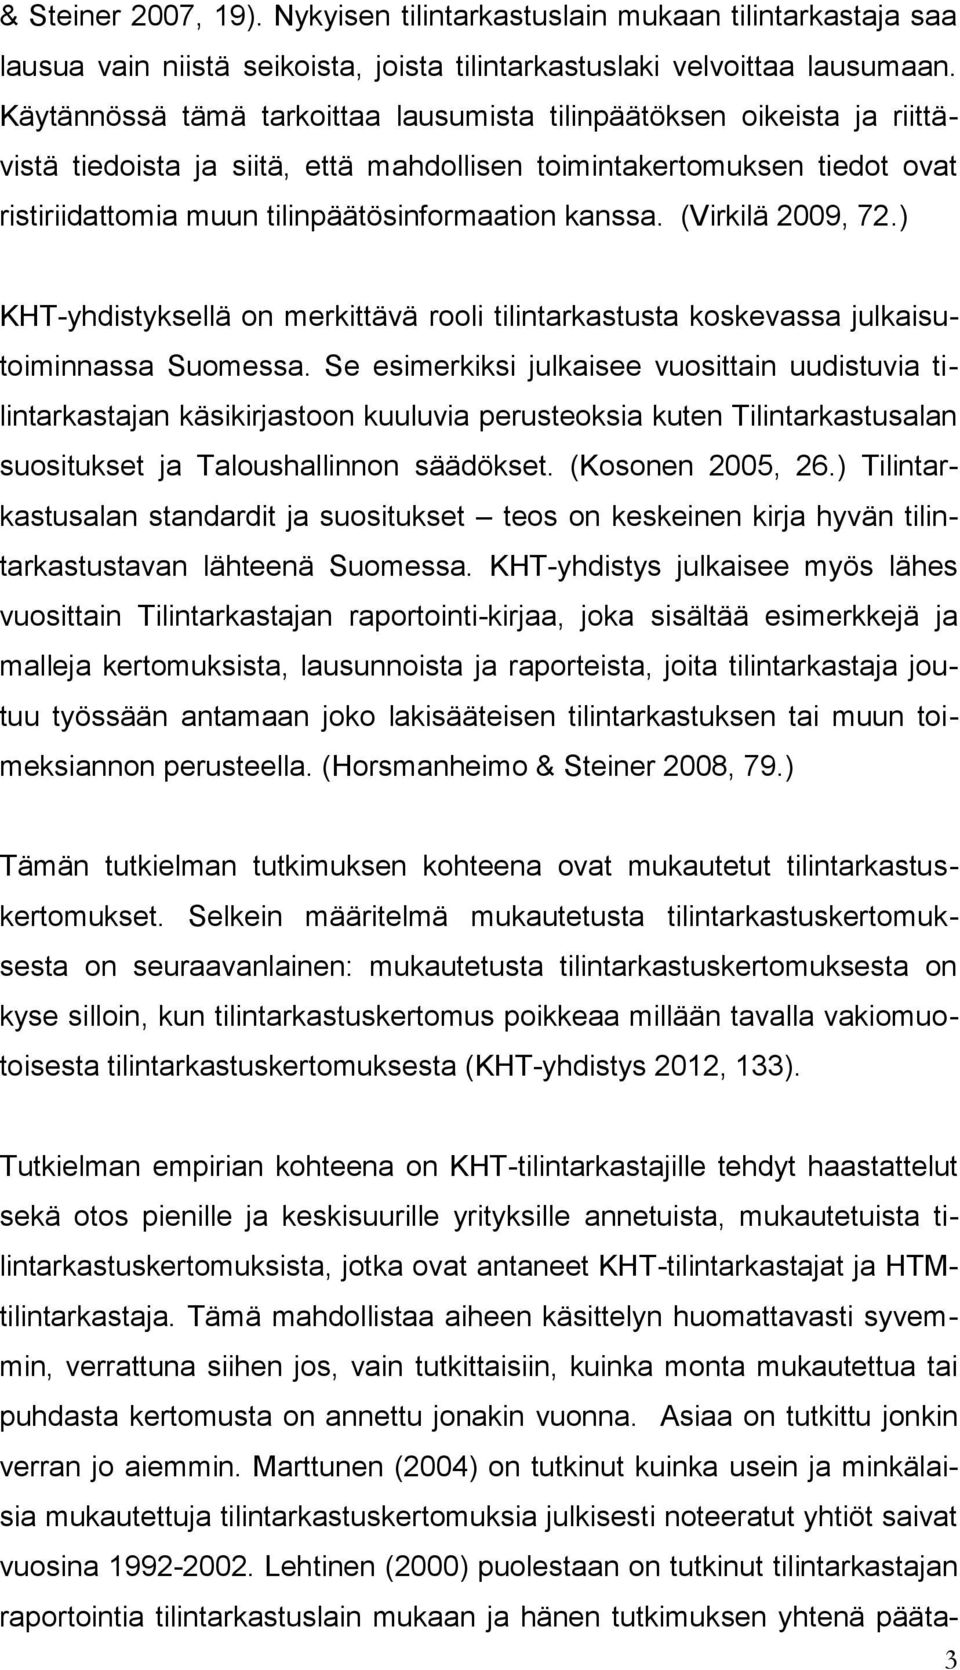 (Virkilä 2009, 72.) KHT-yhdistyksellä on merkittävä rooli tilintarkastusta koskevassa julkaisutoiminnassa Suomessa.